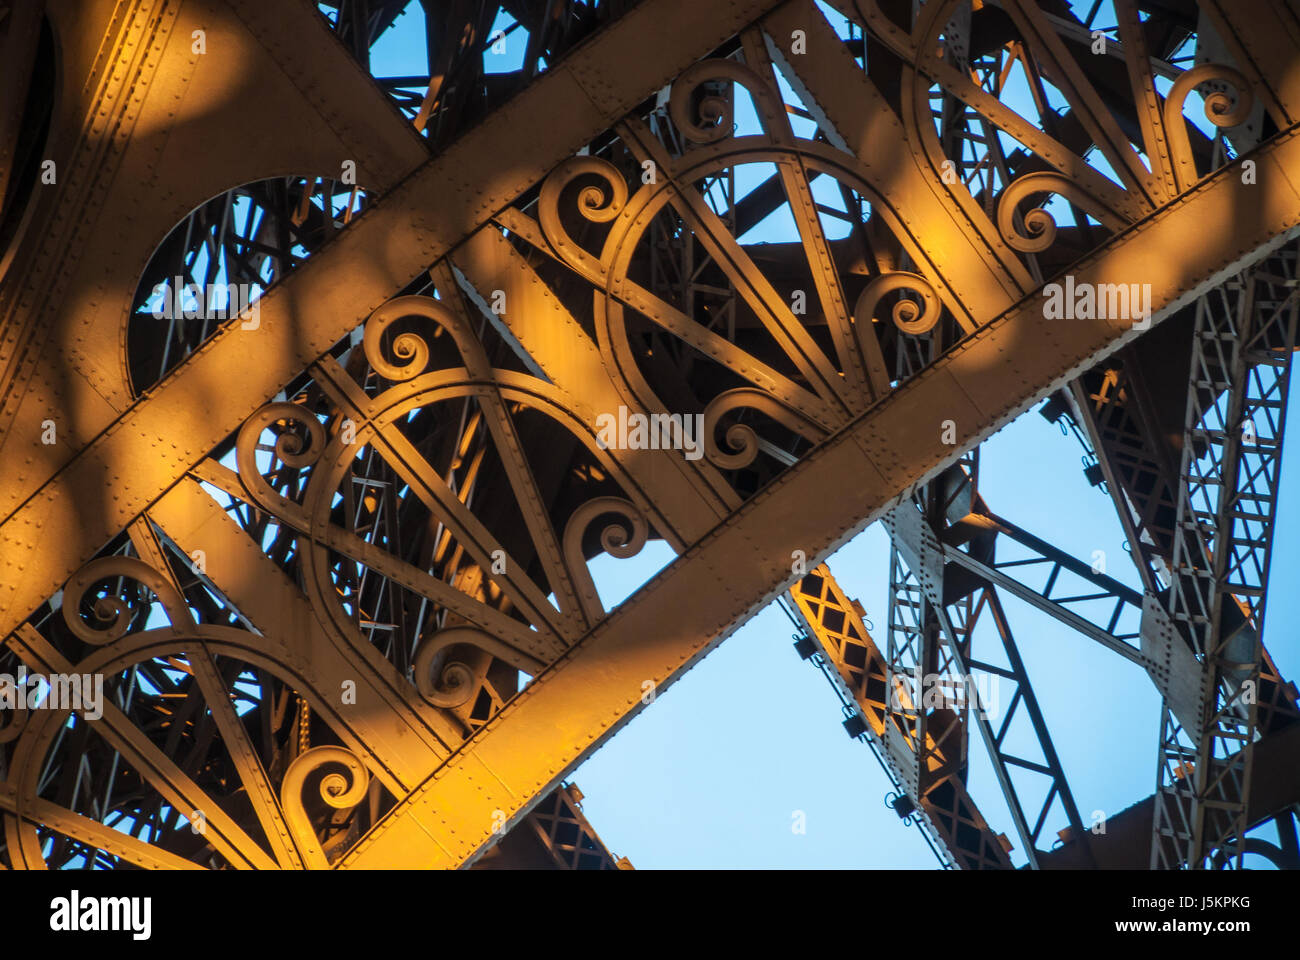 Bogen Sie Eiffel Turm Tour Eiffel blauer Himmel Stahl Struktur im Sonnenuntergang Abendsonne Stockfoto